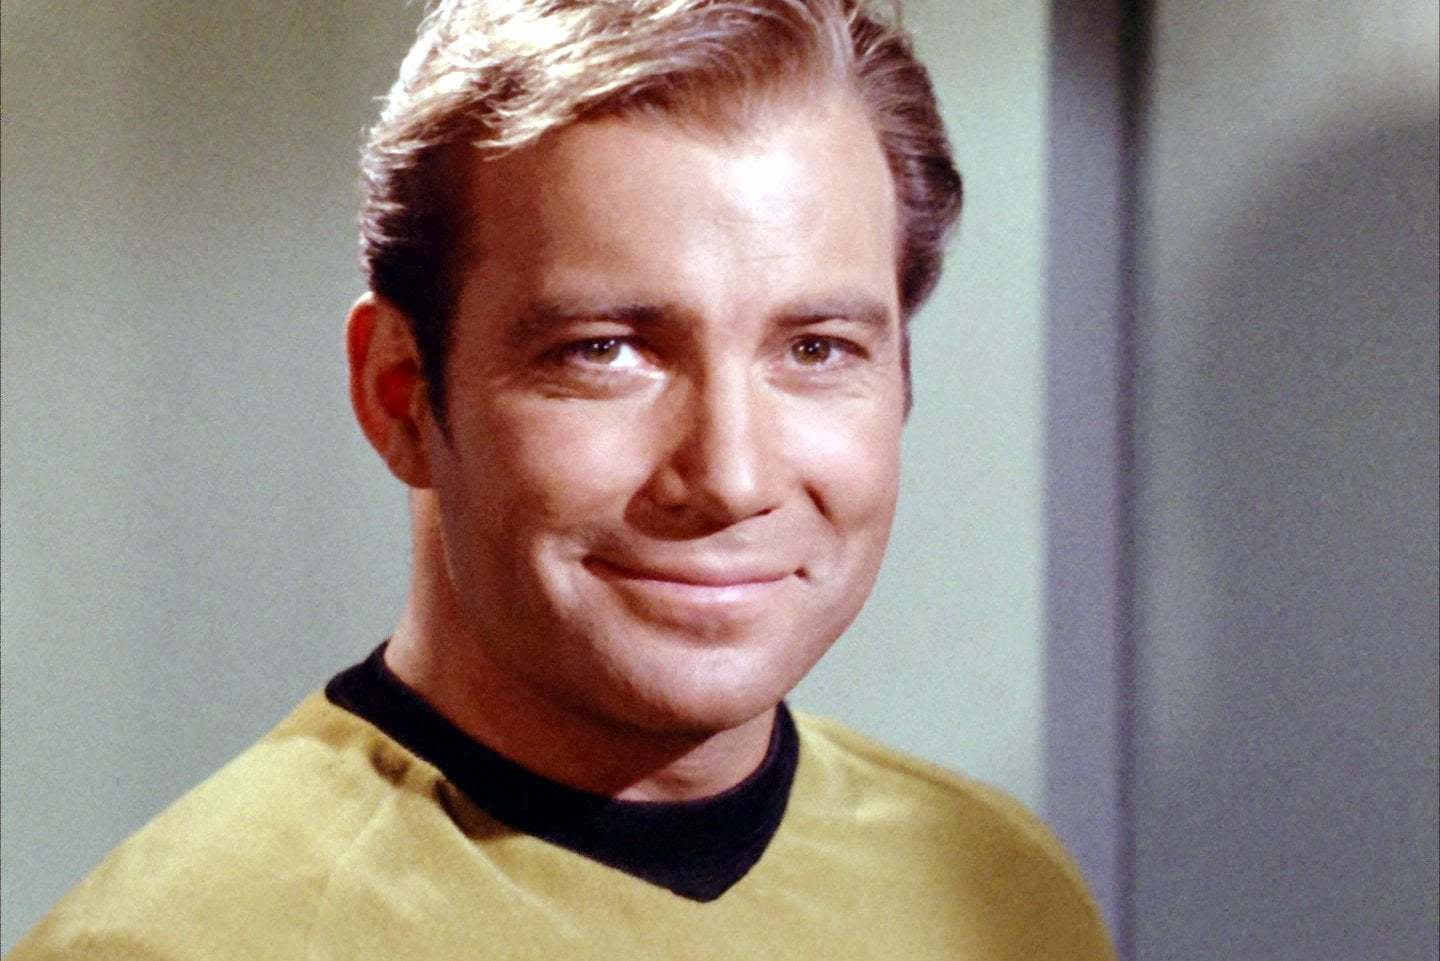 Vintage-1960s-Actor-William-Shatner-as-Captain-Kirk.jpg